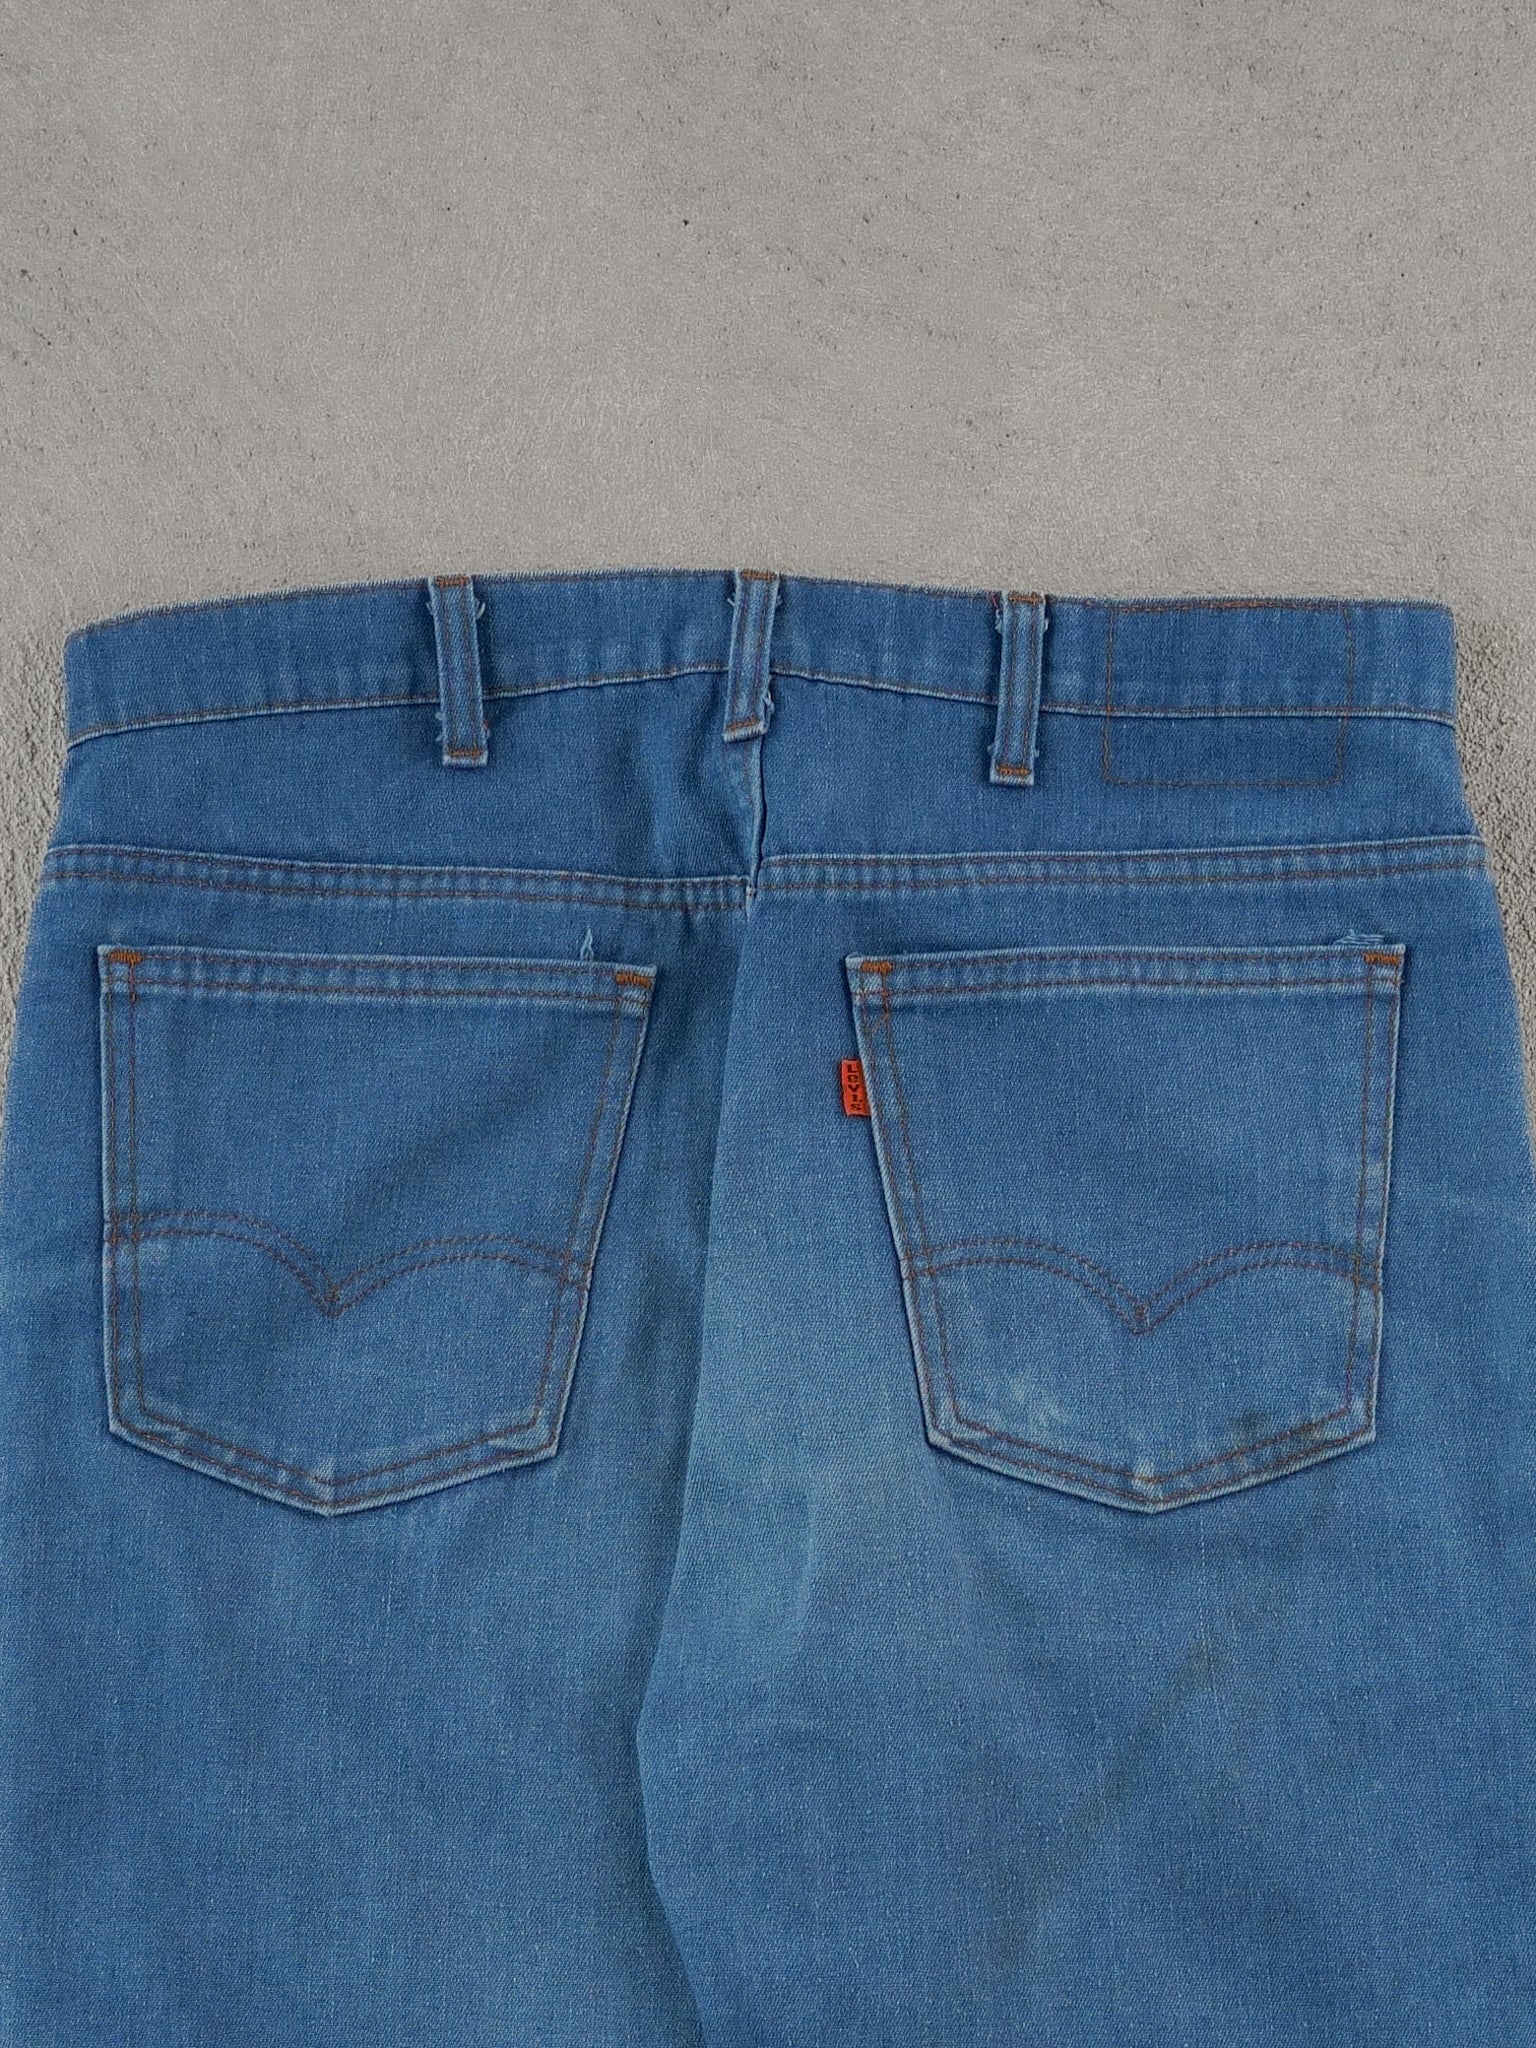 Vintage 70s Blue Levi's Denim Jeans (34x33)